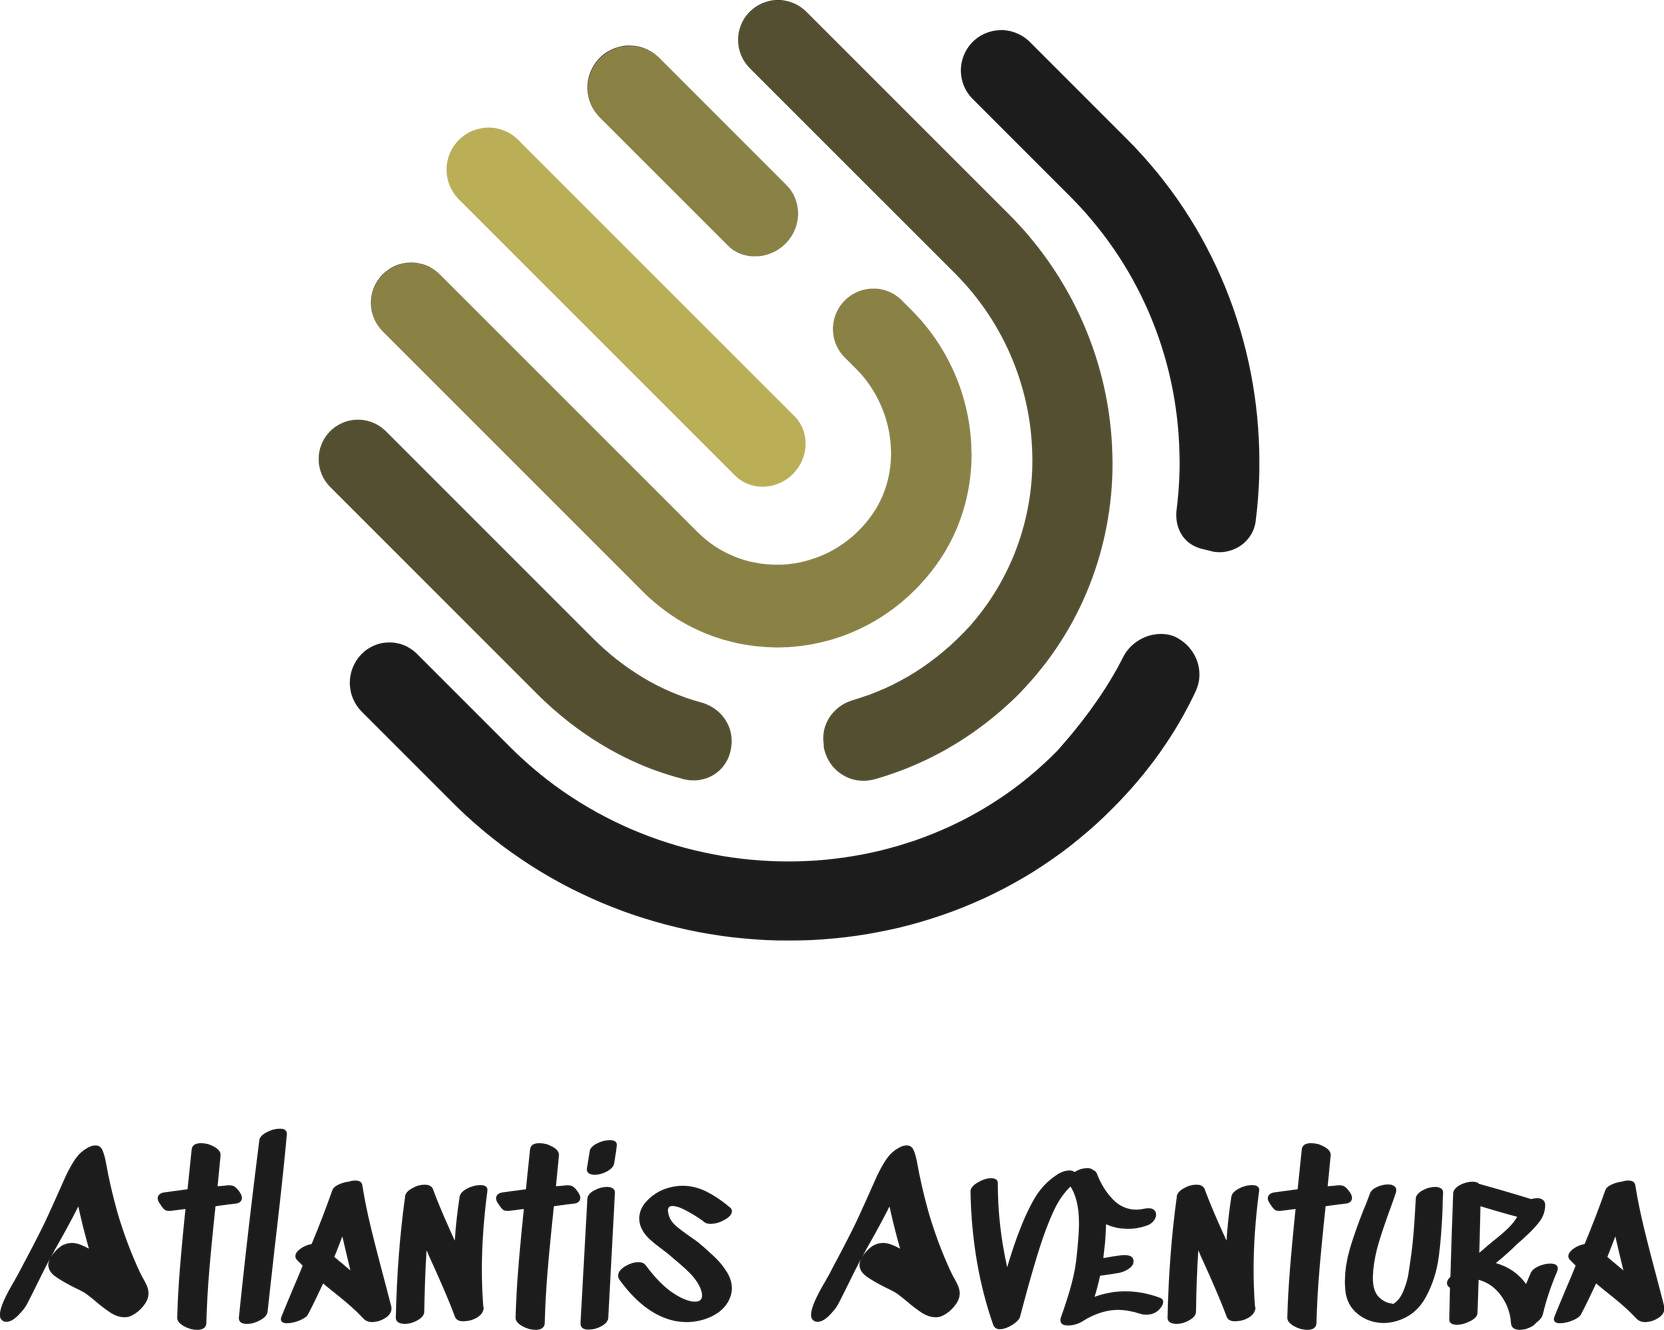 www.atlantisaventura.com